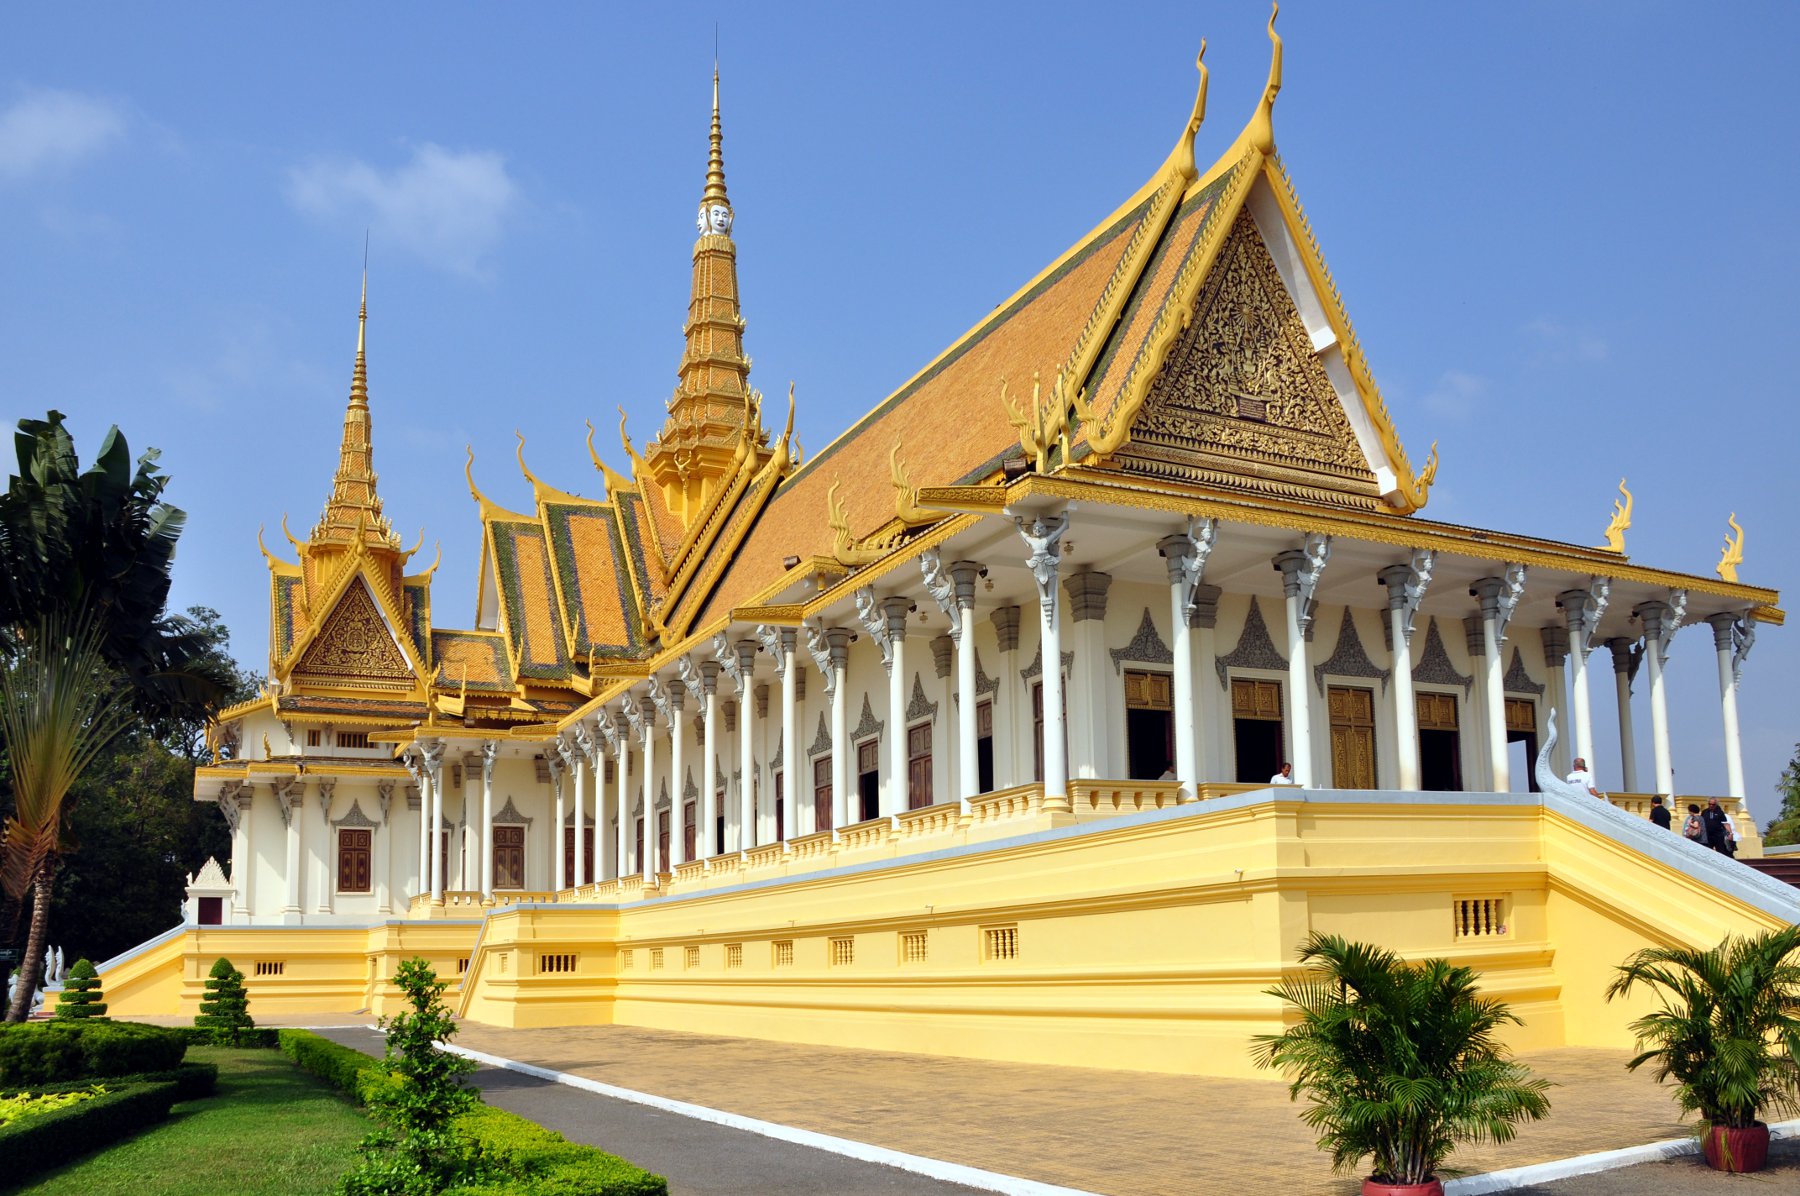 Royal Palace, Phnom Penh Backgrounds, Compatible - PC, Mobile, Gadgets| 1800x1196 px